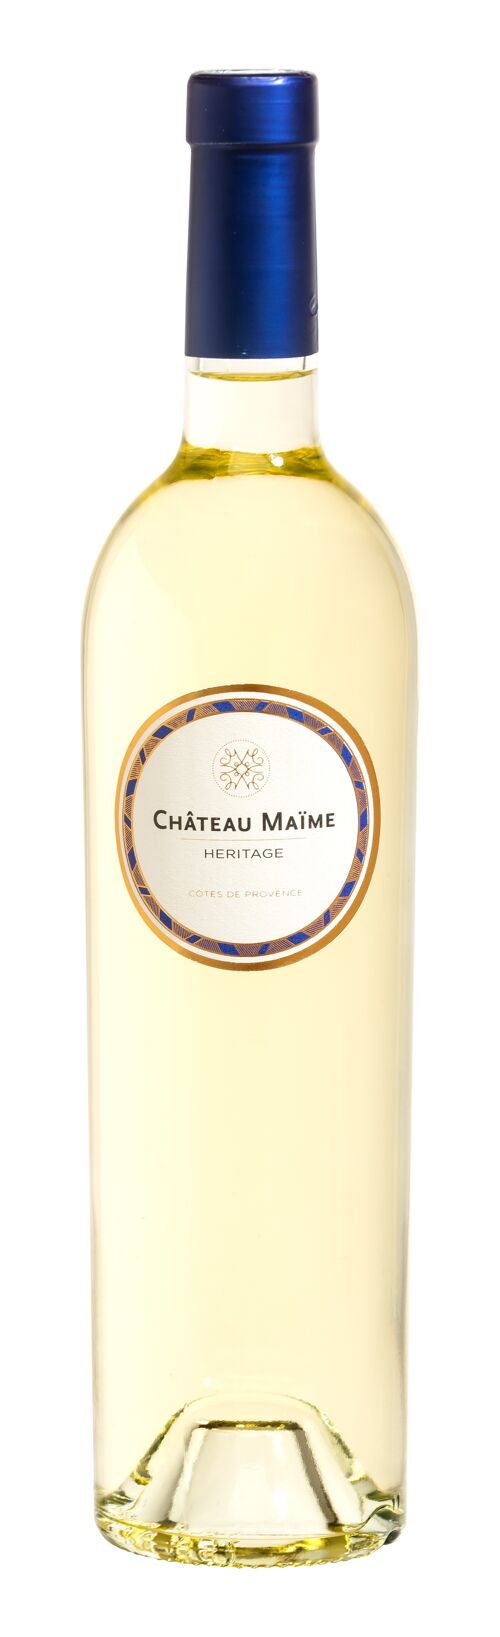 CHT MAIME HERITAGE BLANC - Côtes de Provence